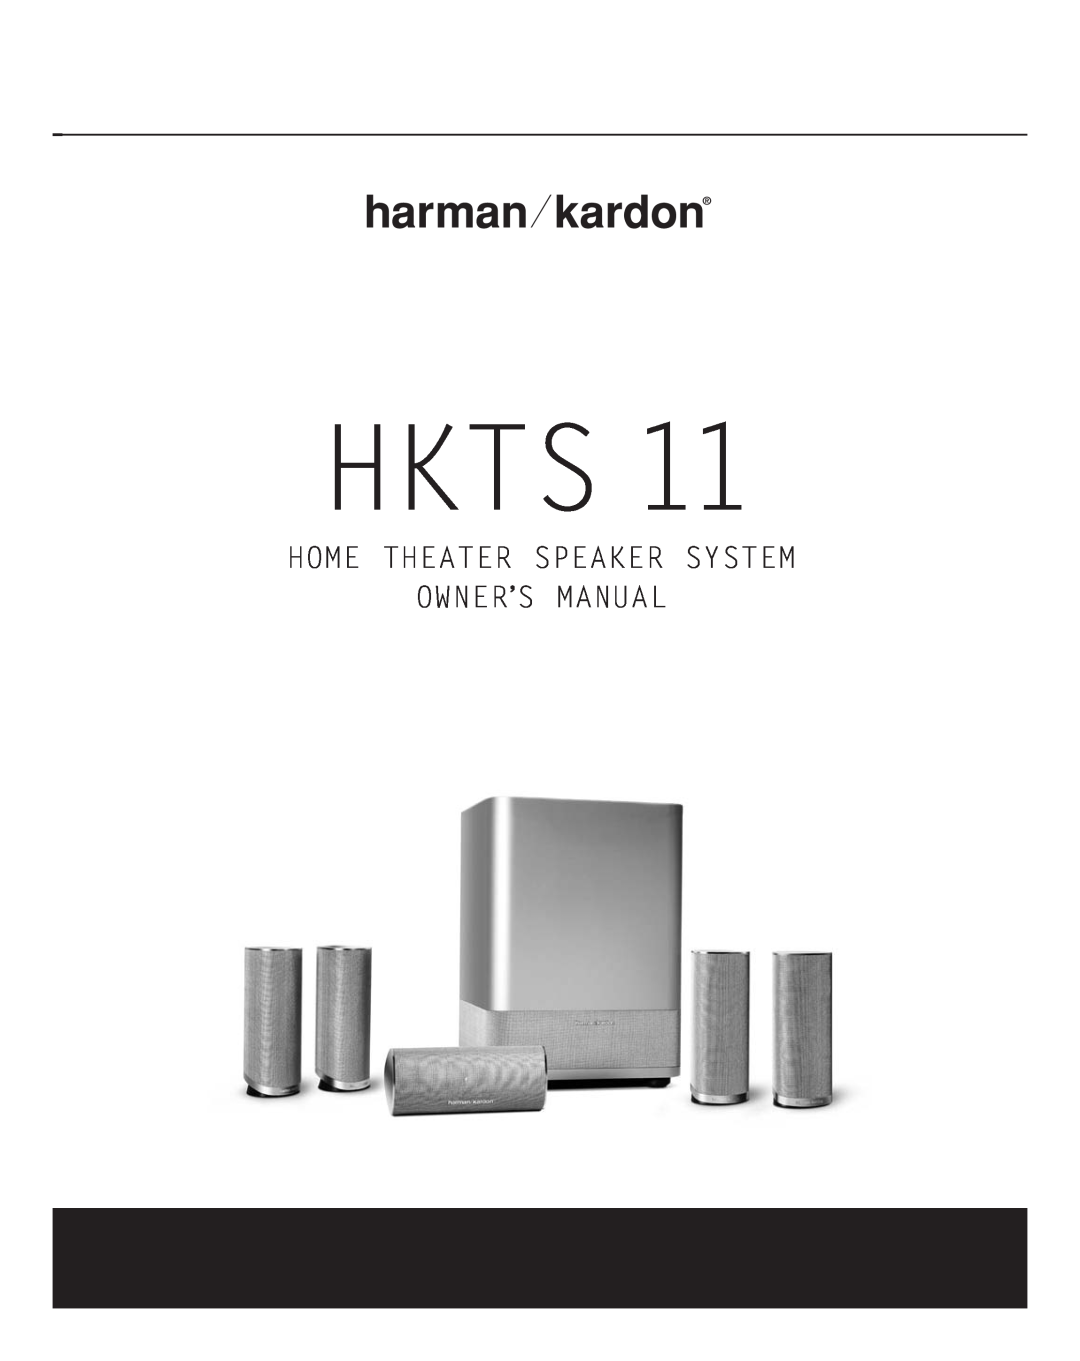 Harman-Kardon HKTS11 owner manual Power for the Digital Revolution, Hkts 